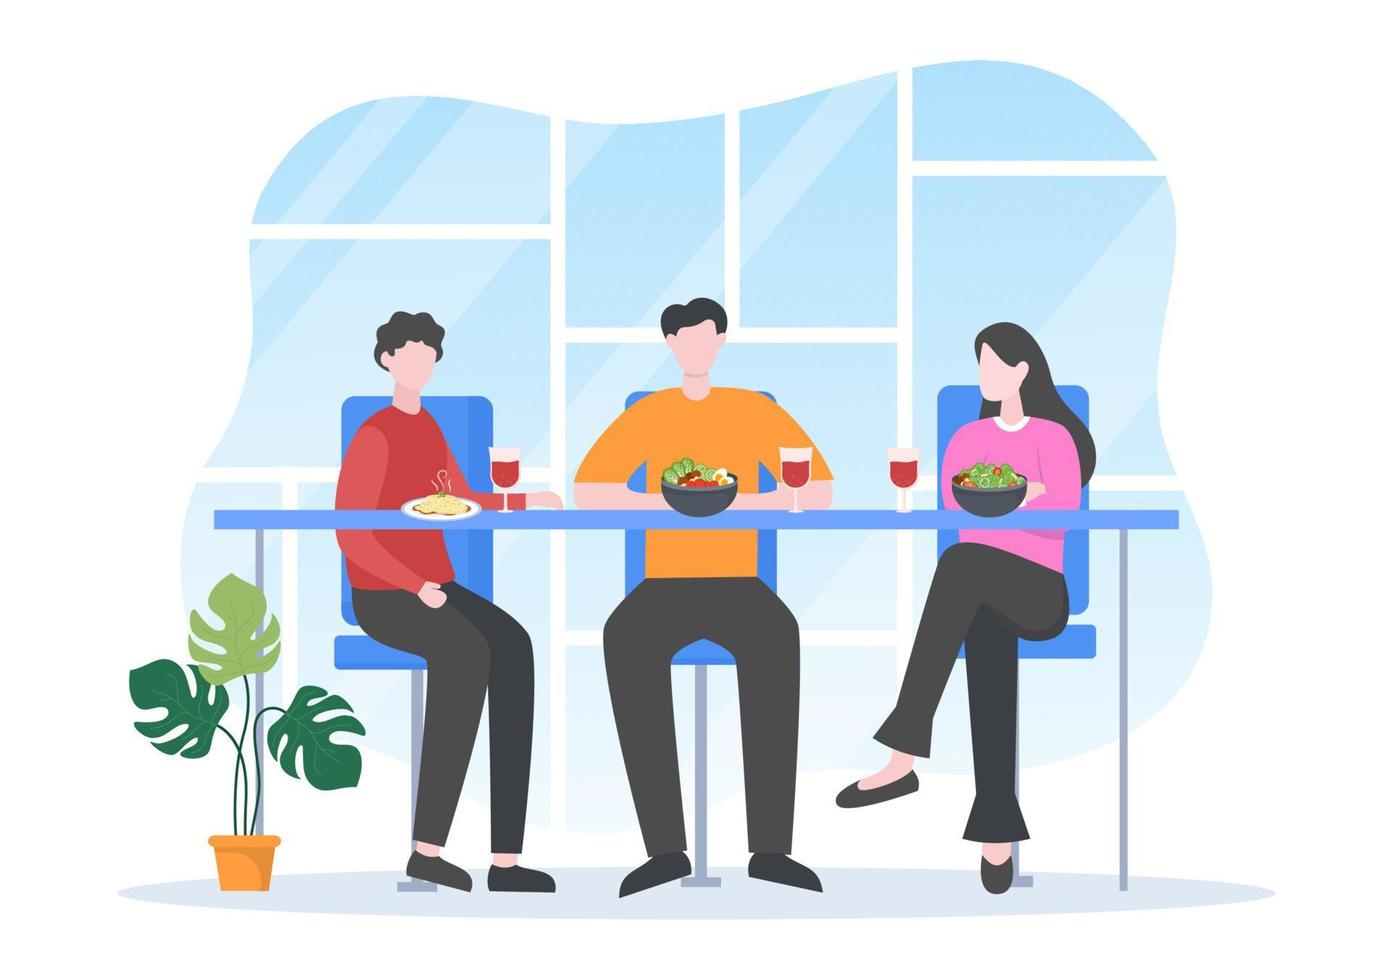 gente comiendo, hablando, bebiendo y trabajando en mesas en café o restaurante en ilustración de caricatura plana vector